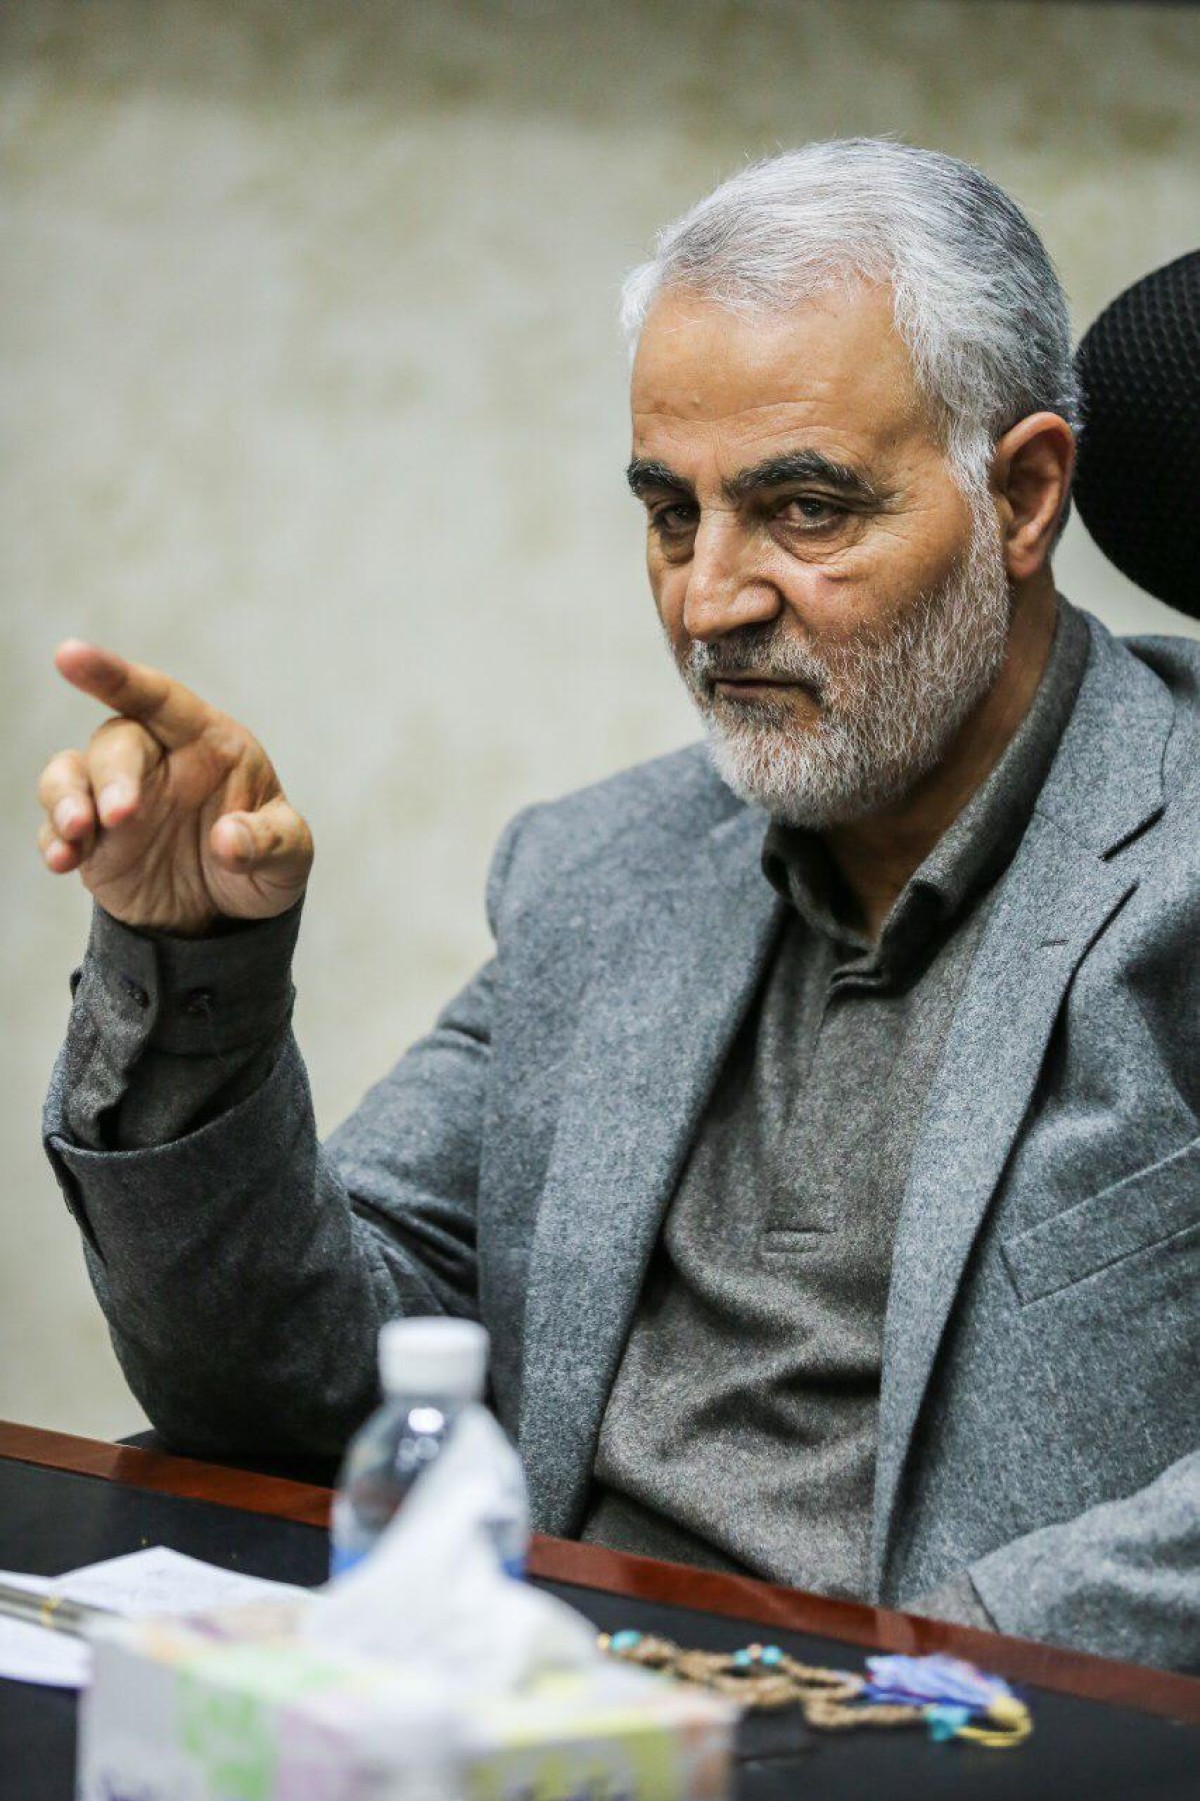 مخالف میڈیا بھی ایرانی جنرل کو ان کے سلوک کی وجہ سے سرخیوں میں لانے پر مجبور تها